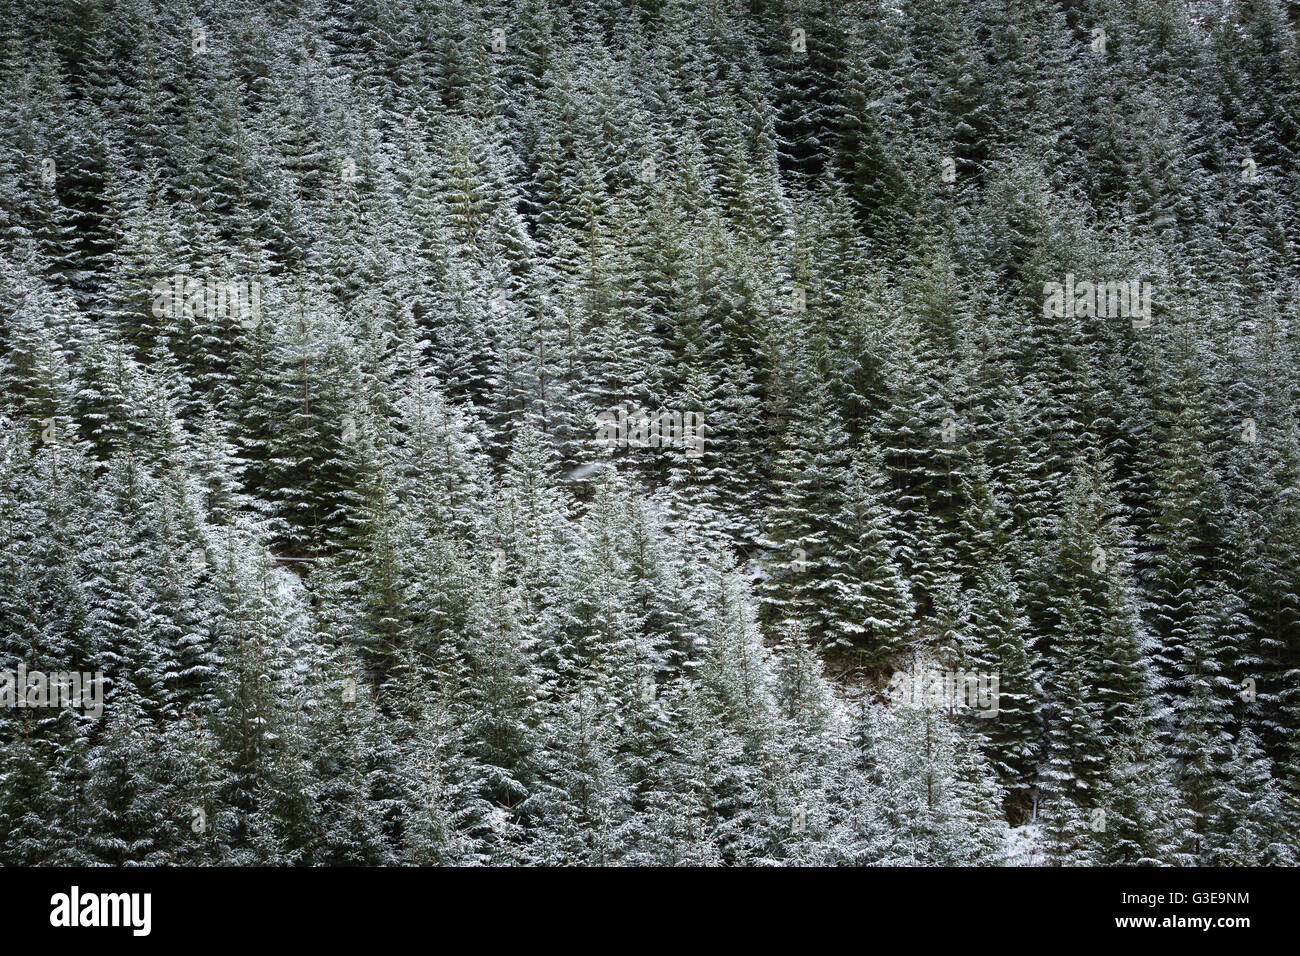 La forêt de pin sylvestre sous les chutes de neige fraîche, l'ouest des Highlands, Ecosse Banque D'Images